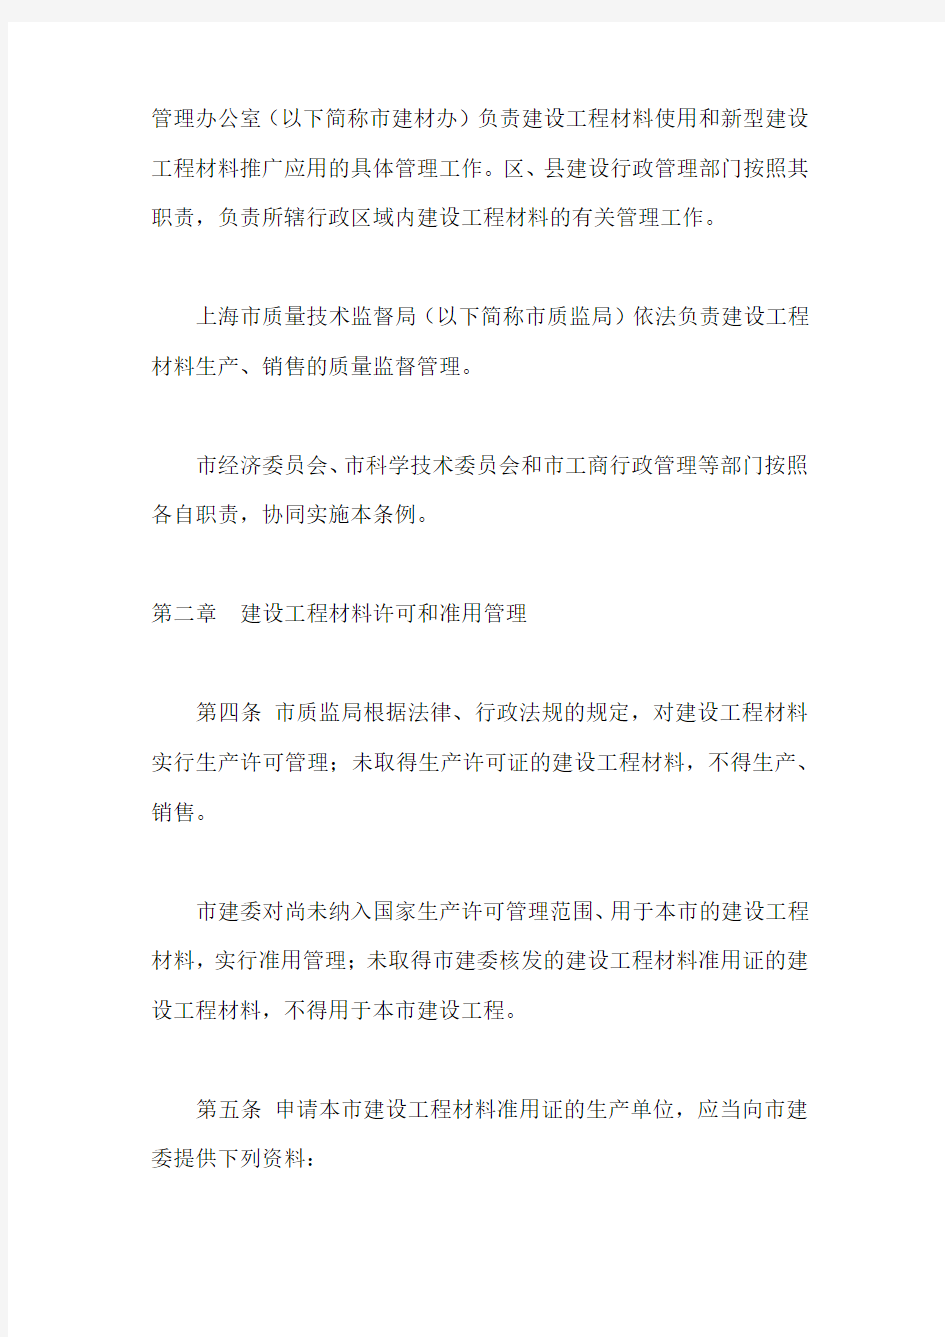 33.《上海市建设工程材料管理条例》(市人大常委会公告第21号发布,2015年修正)